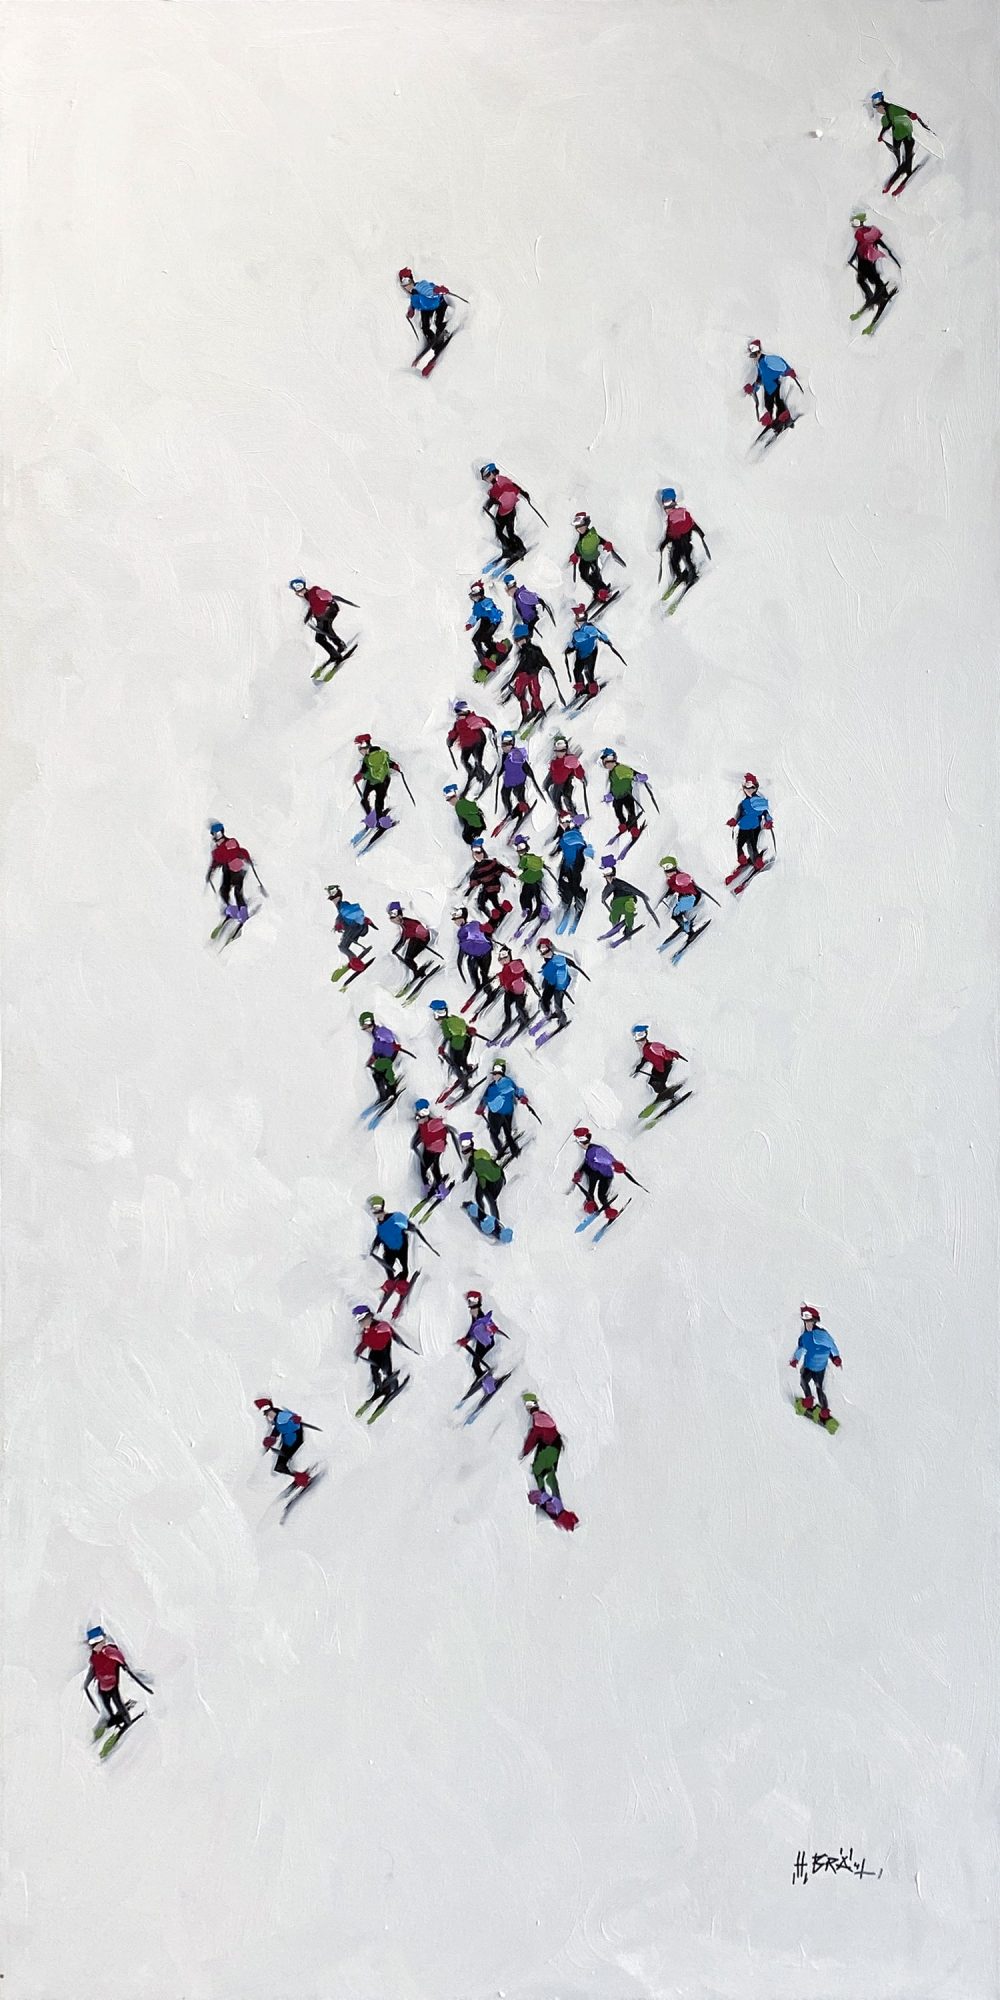 Skier Series by Harold Braul